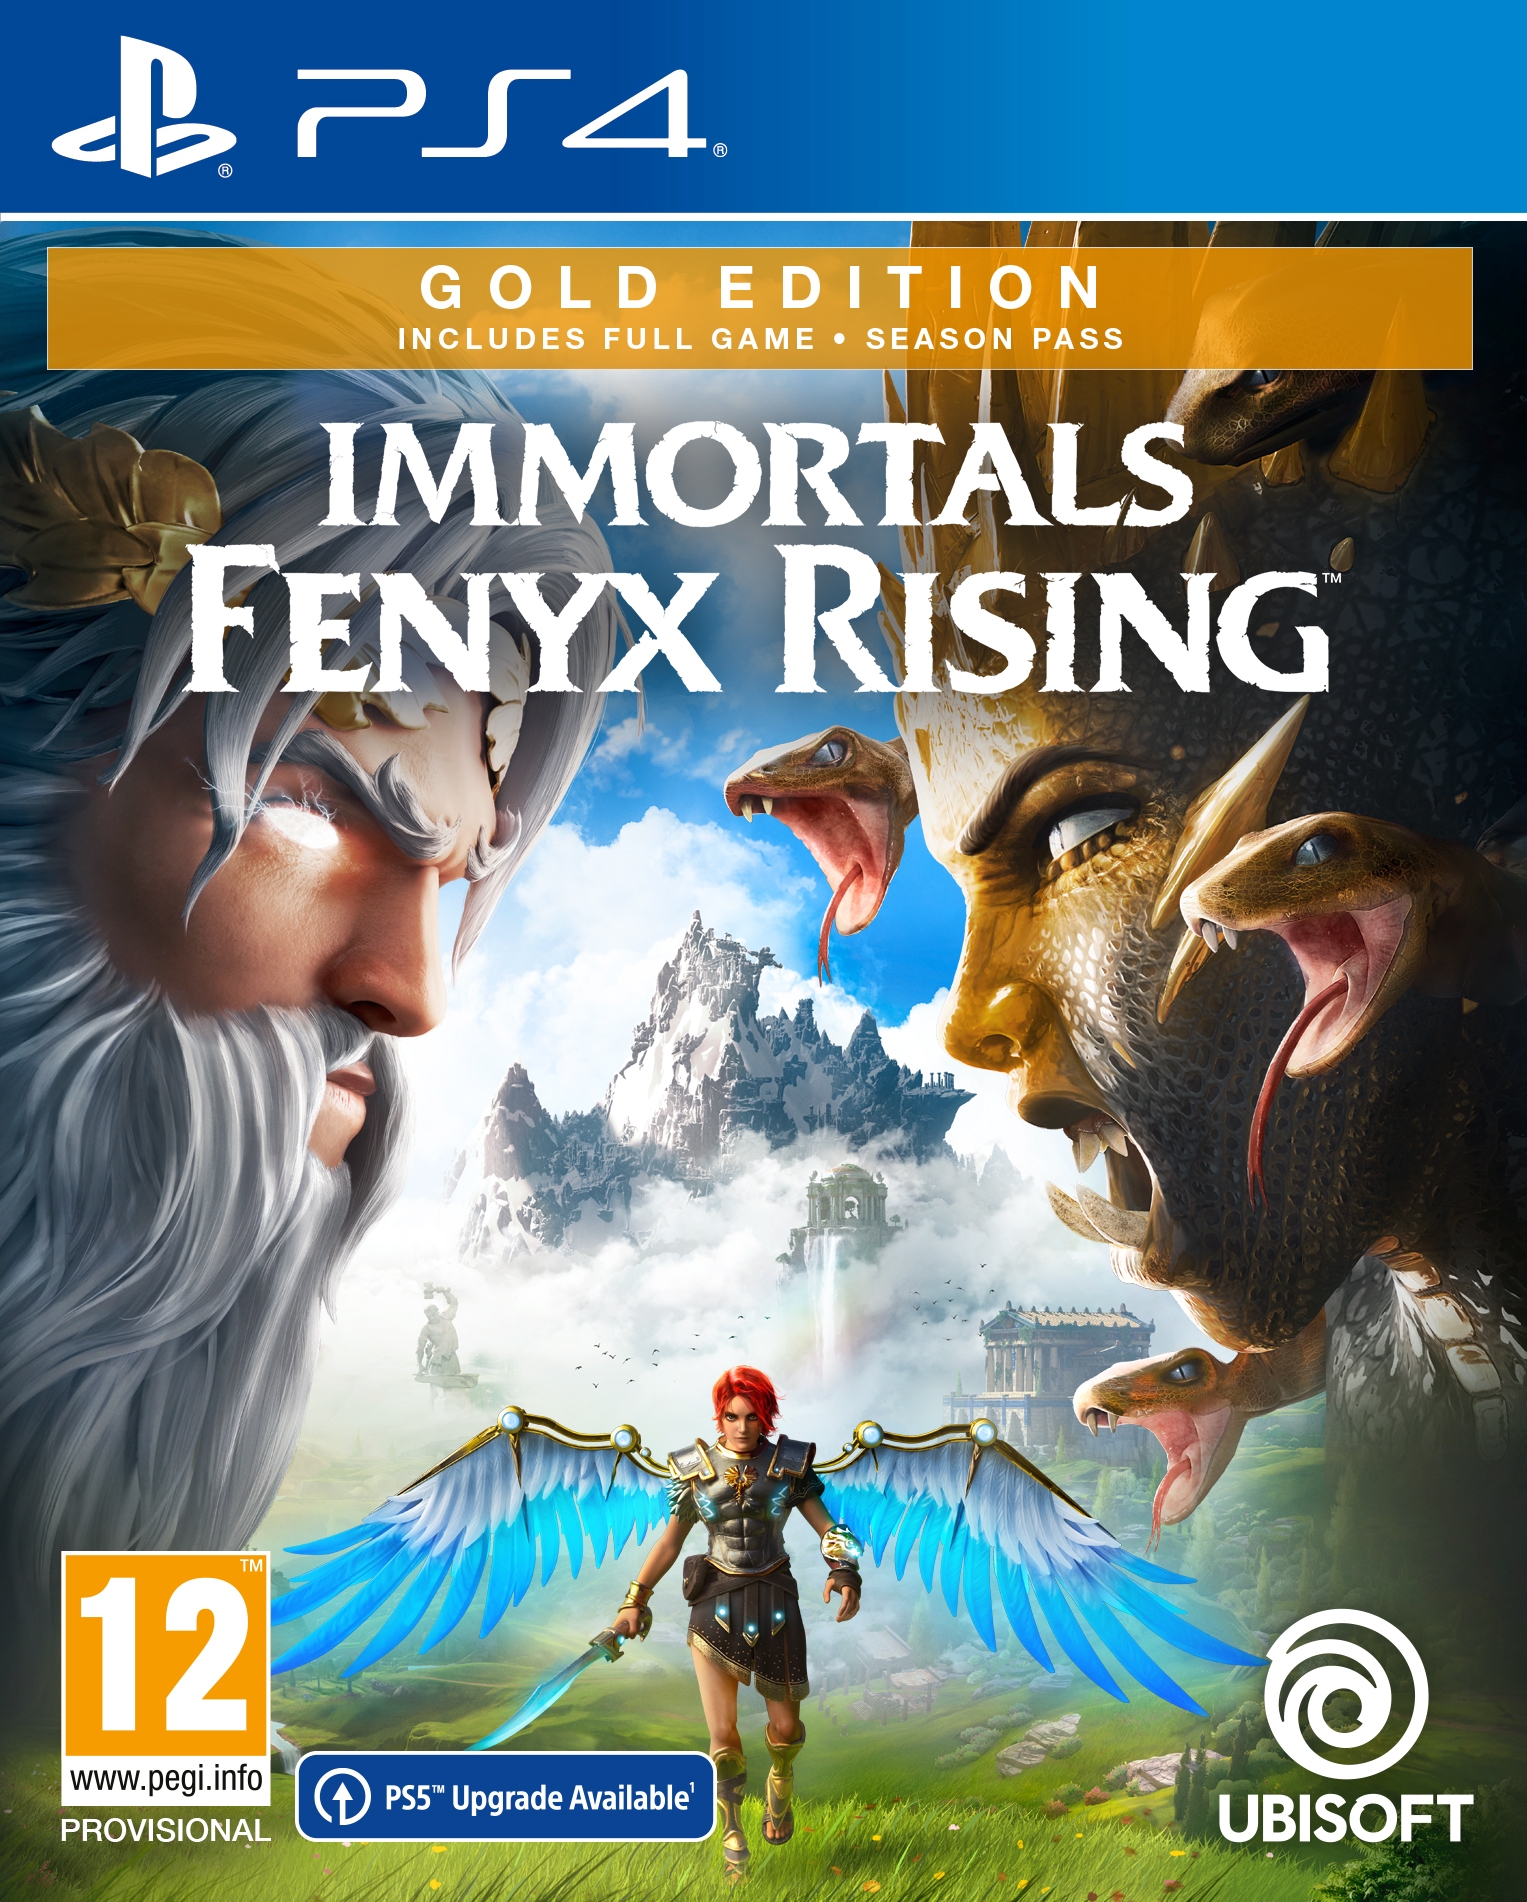 PS4 Immortals Fenyx Rising Gold Edition